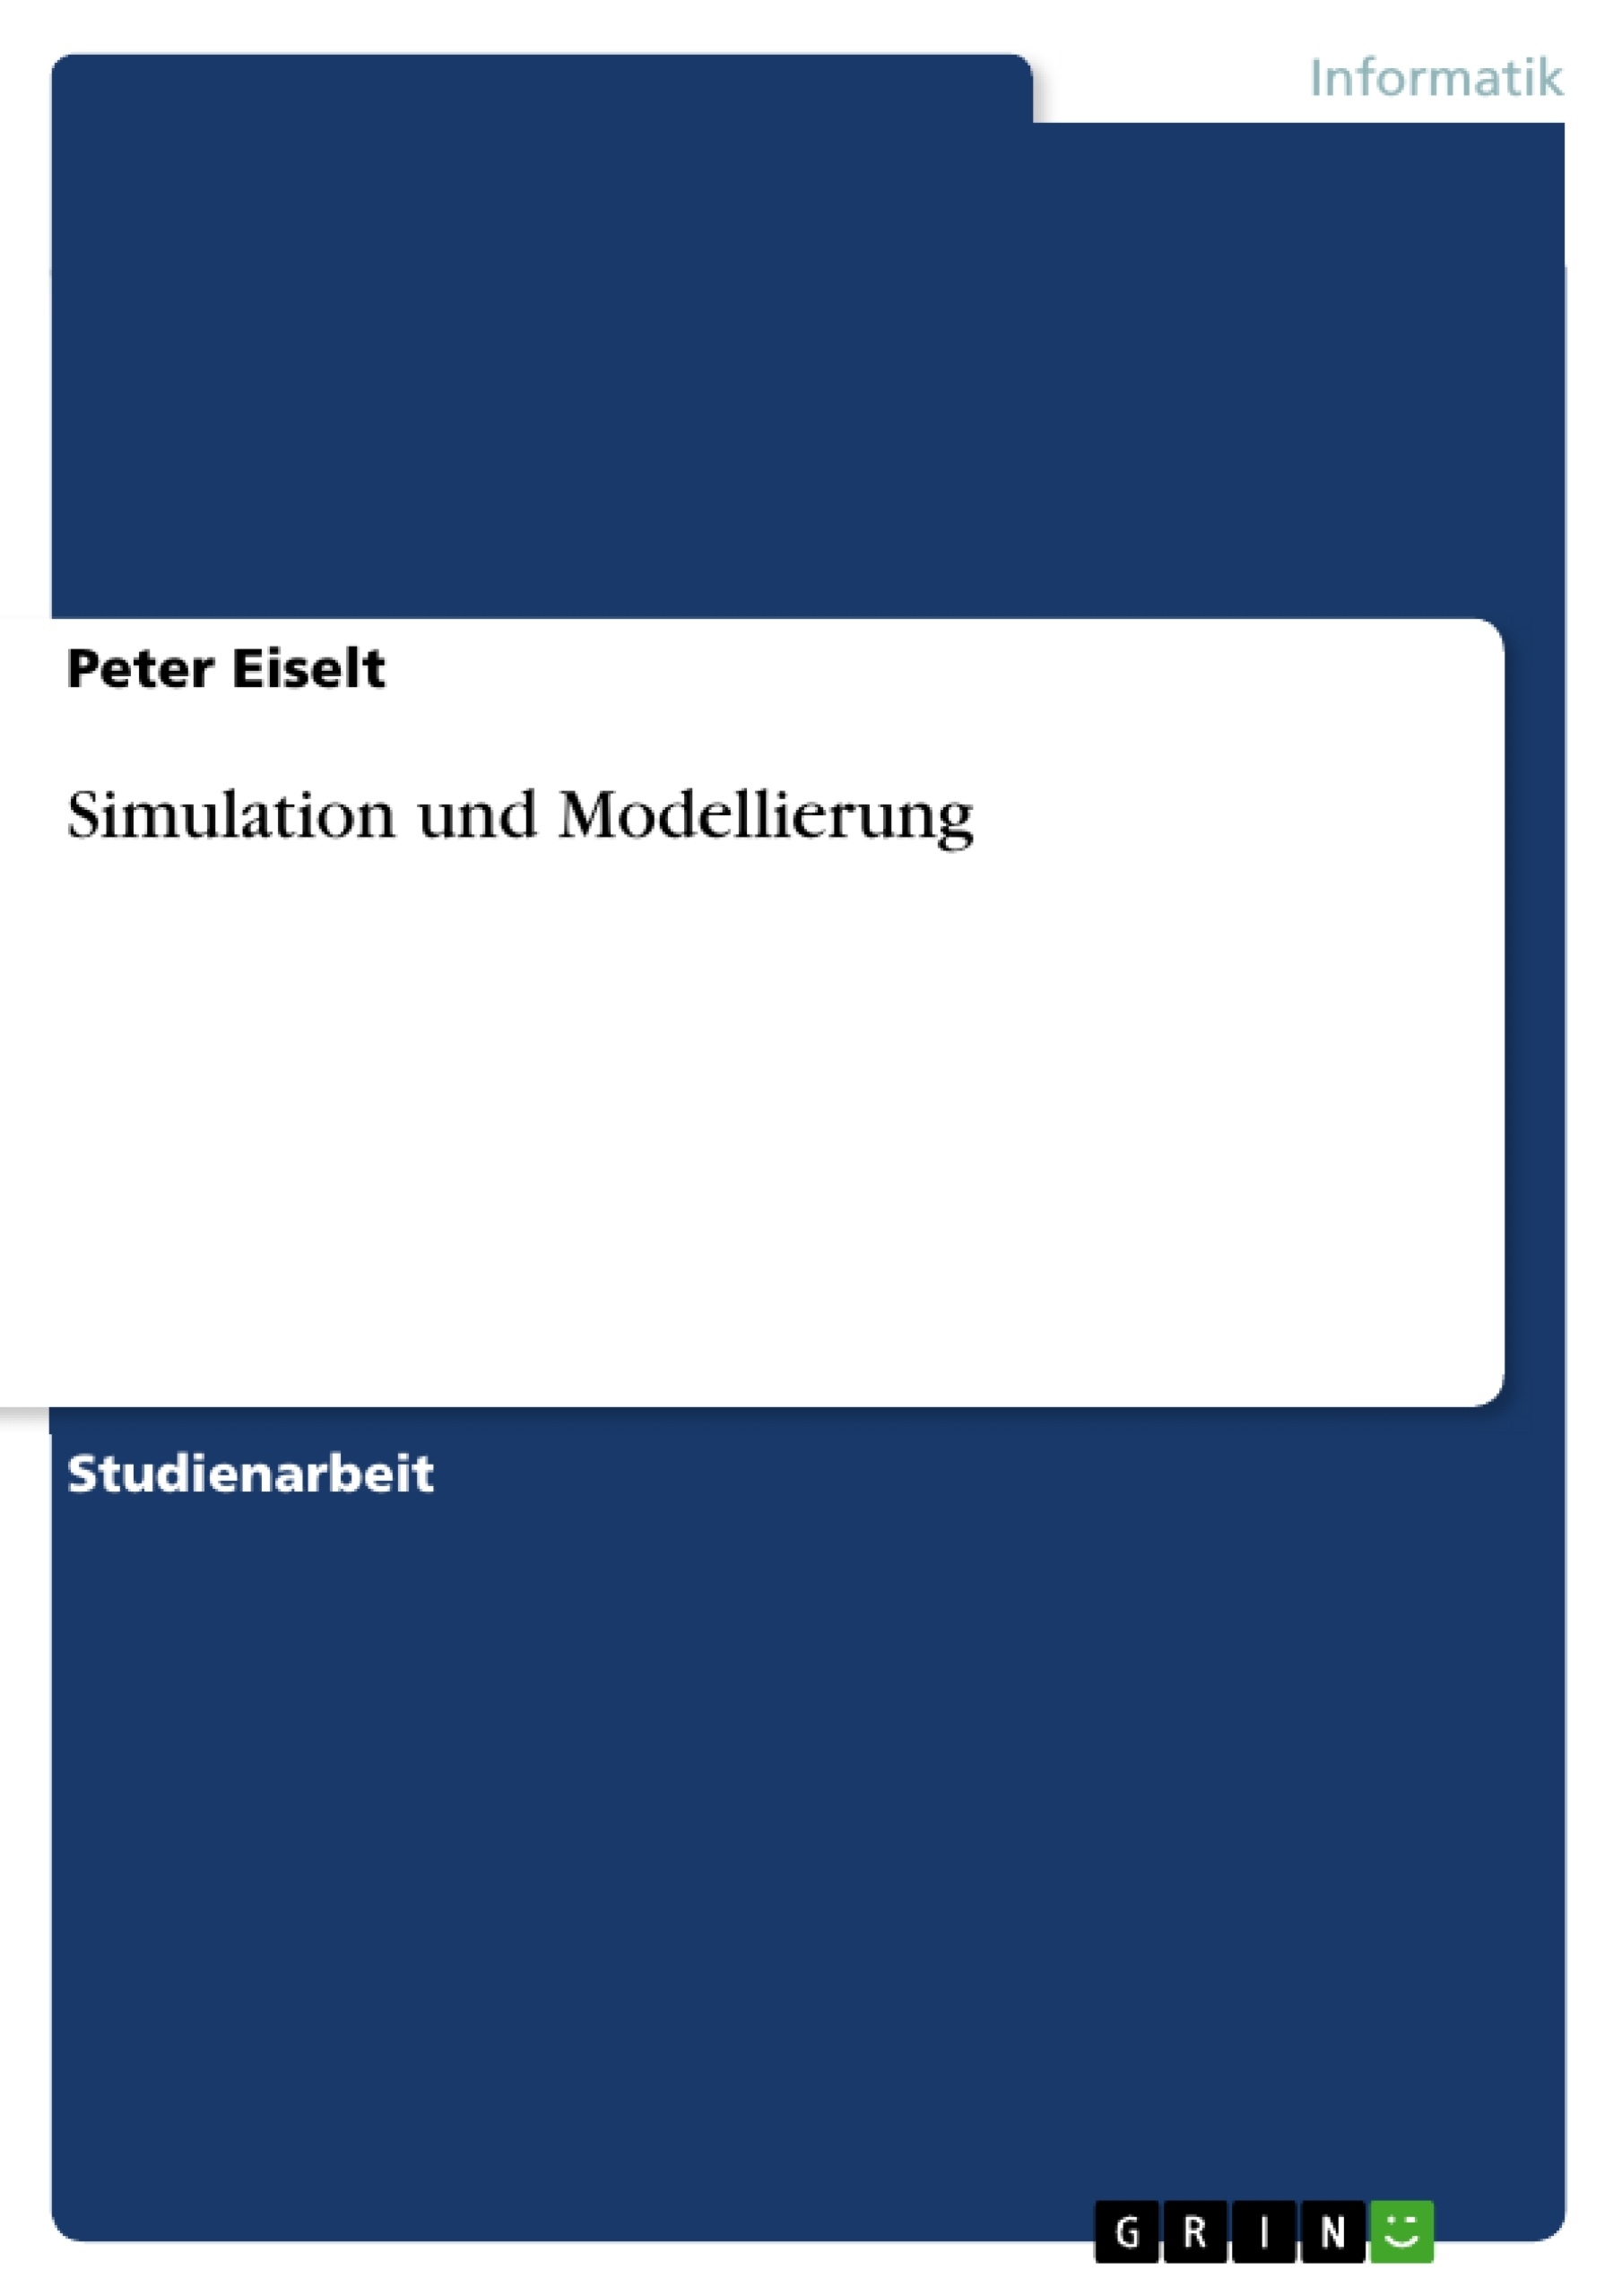 Title: Simulation und Modellierung